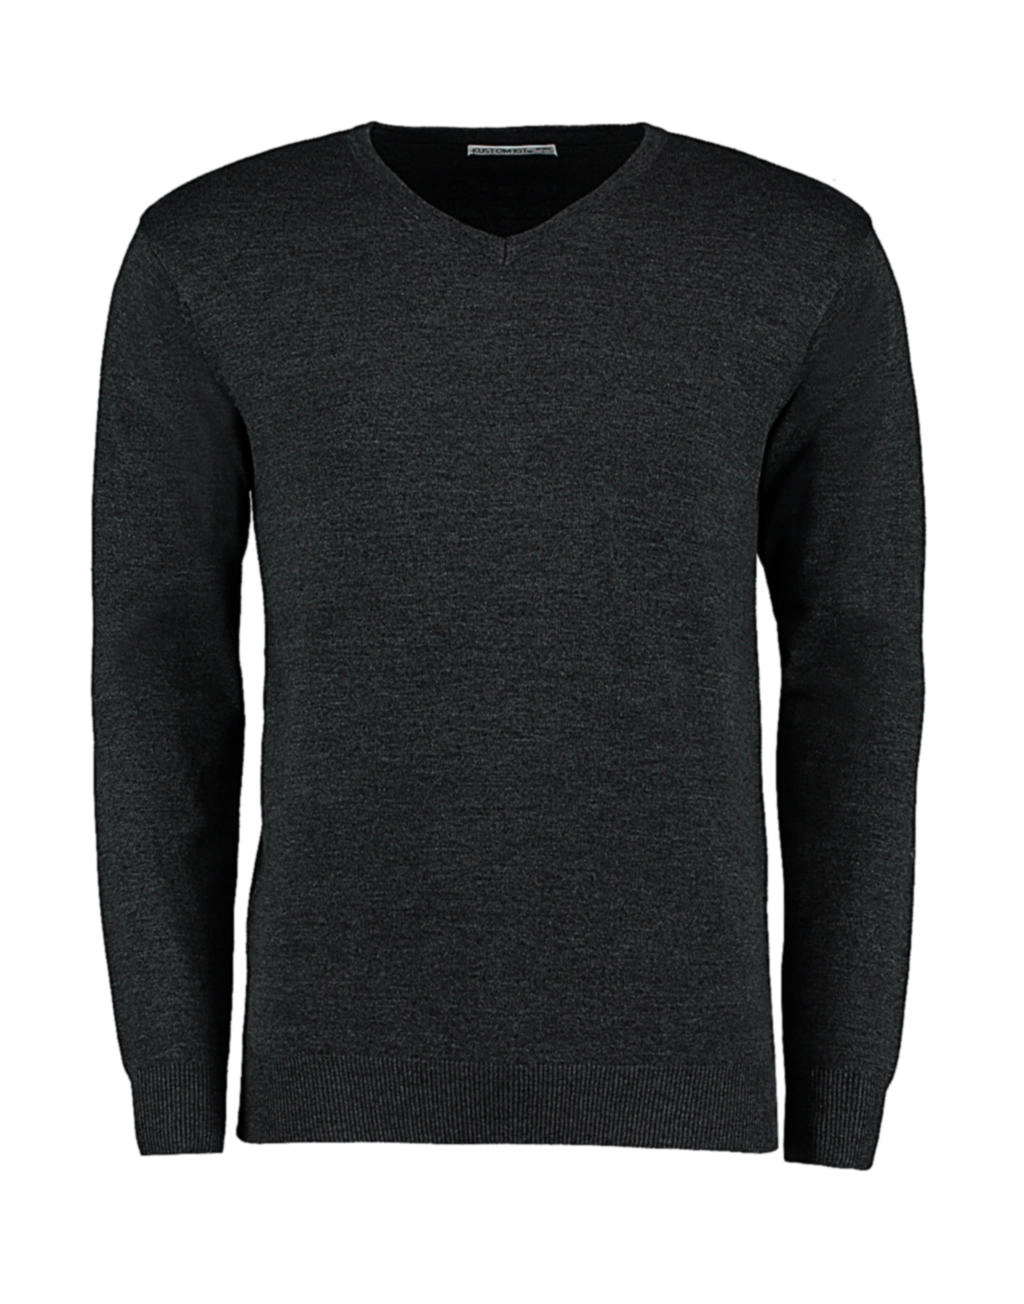 Classic Fit Arundel V Neck Sweater zum Besticken und Bedrucken in der Farbe Graphite mit Ihren Logo, Schriftzug oder Motiv.